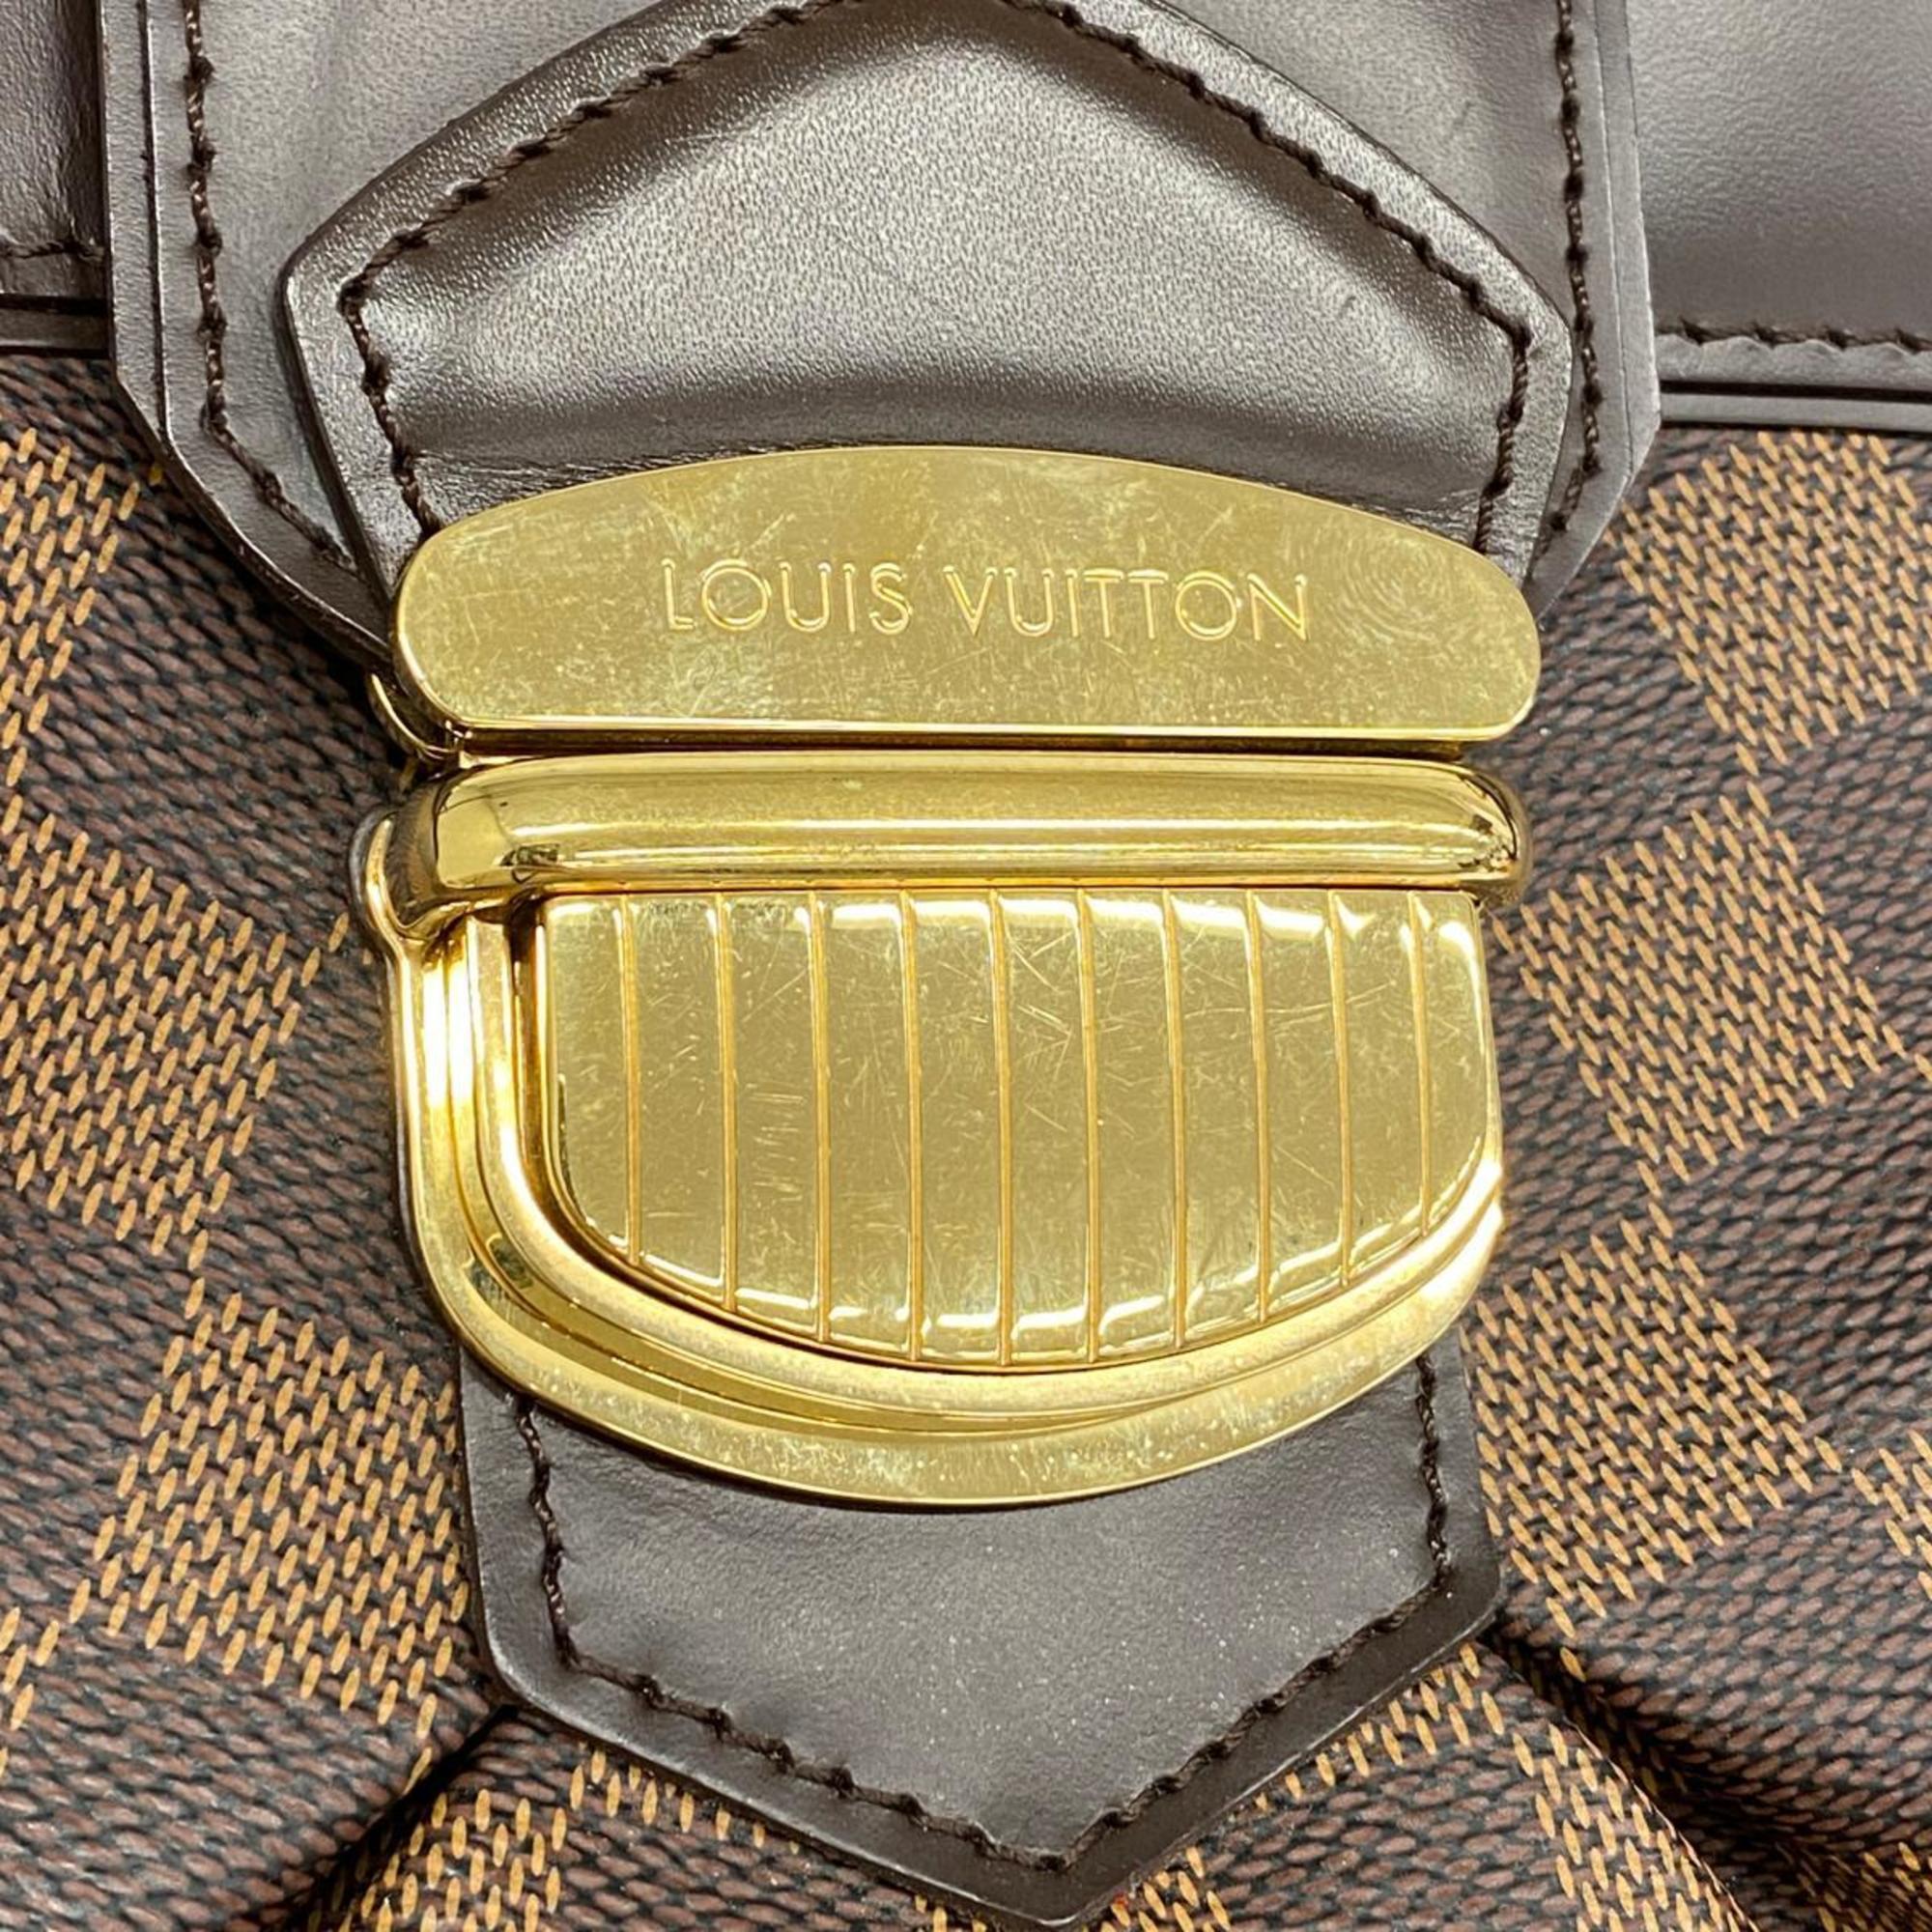 ルイ・ヴィトン(Louis Vuitton) ルイ・ヴィトン ショルダーバッグ ダミエ システィナGM N41540 エベヌレディース